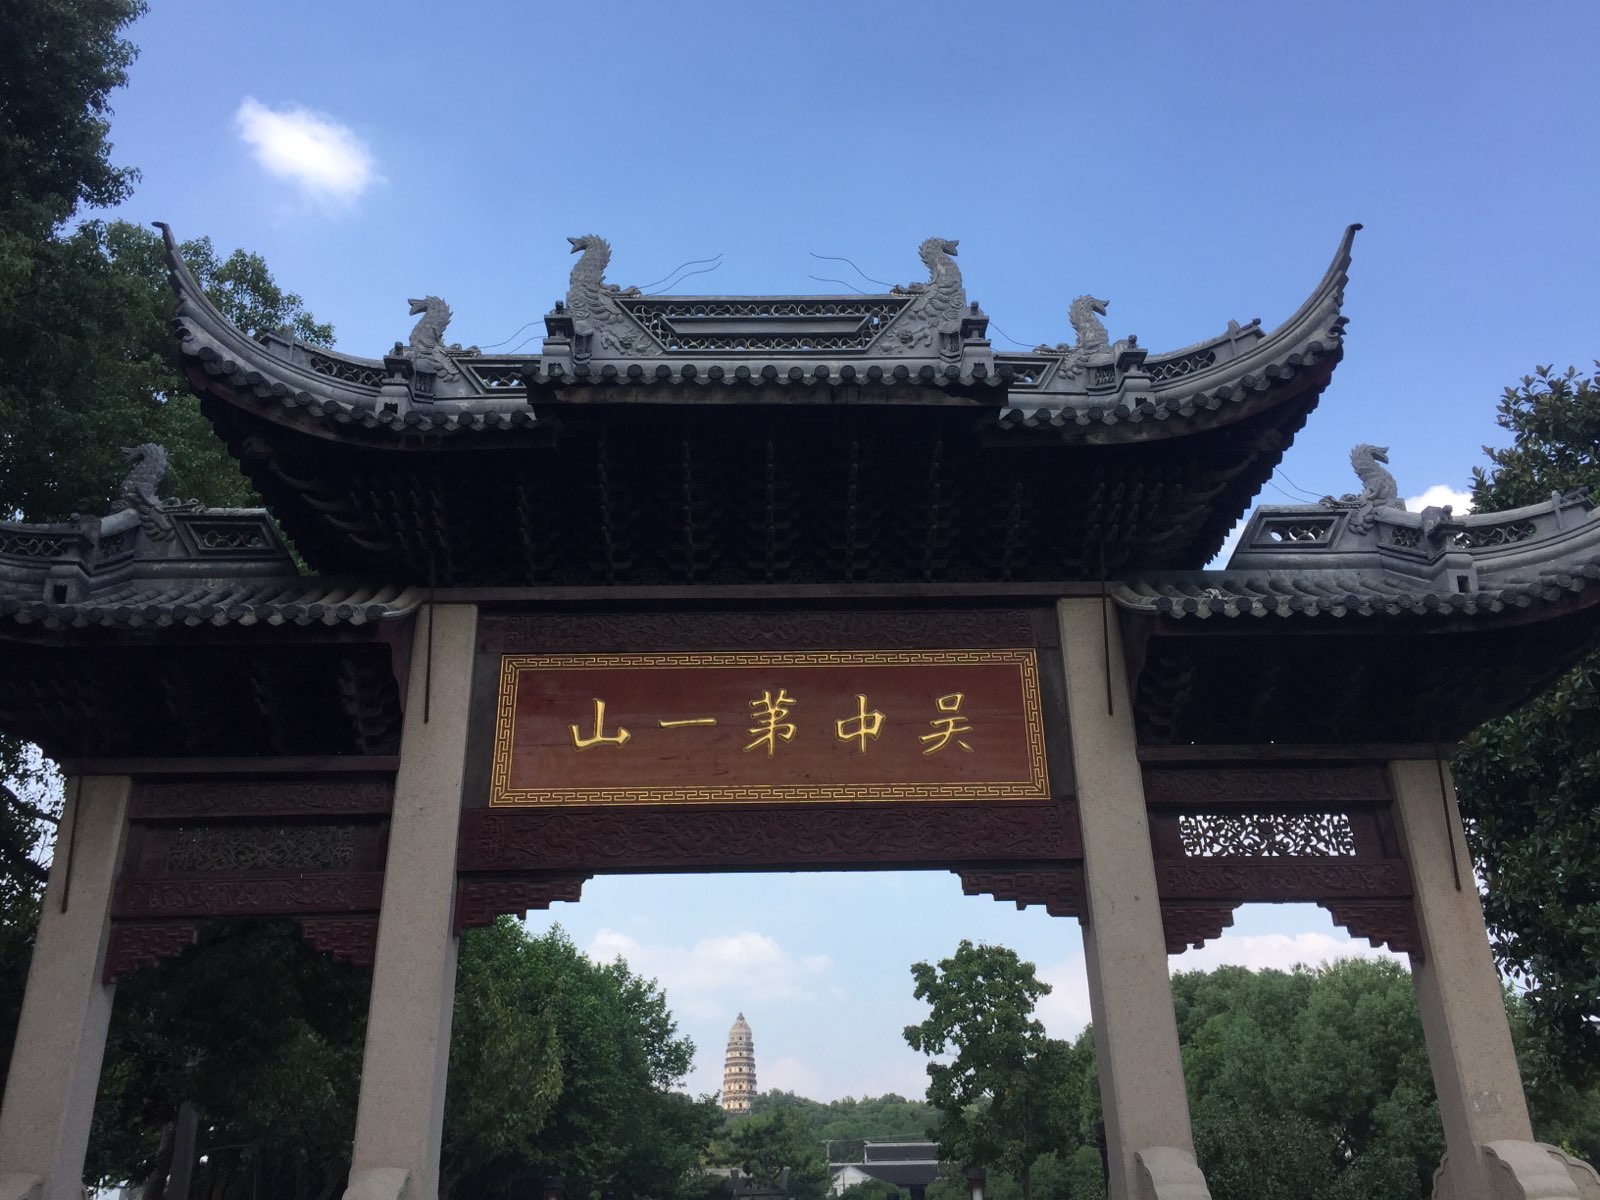 西安钟楼位于西安市中心，明城墙内东西南北四条大街的交汇处，是中国现存钟